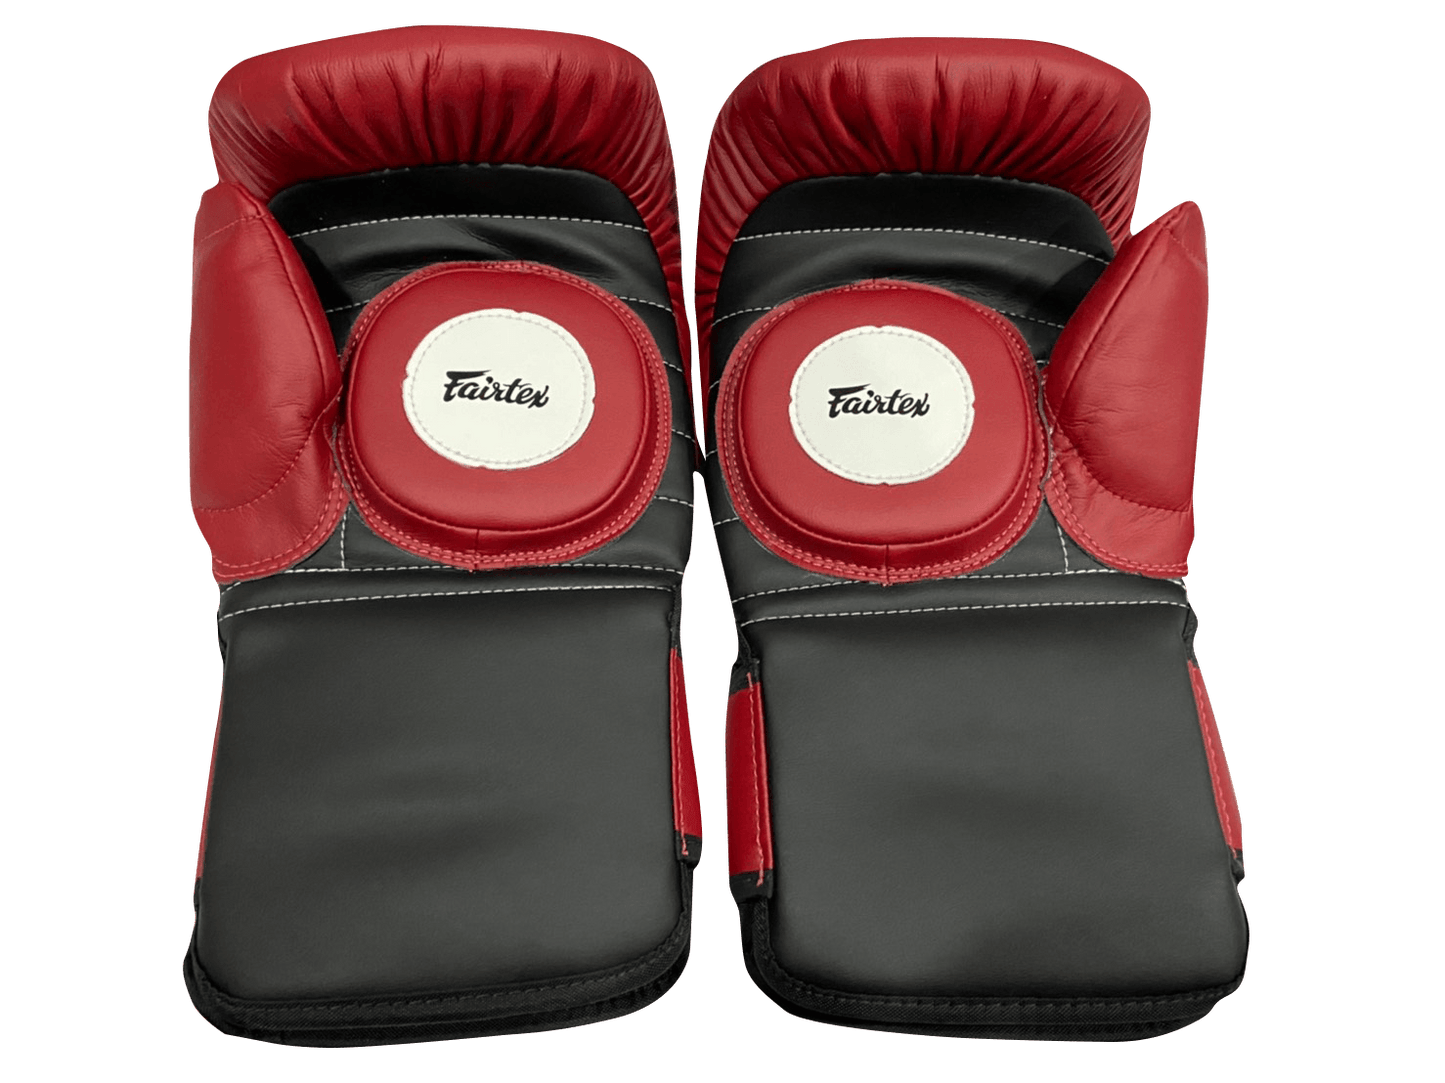 Fairtex Coach Sparring Gloves BGV13 Red Black - SUPER EXPORT SHOP